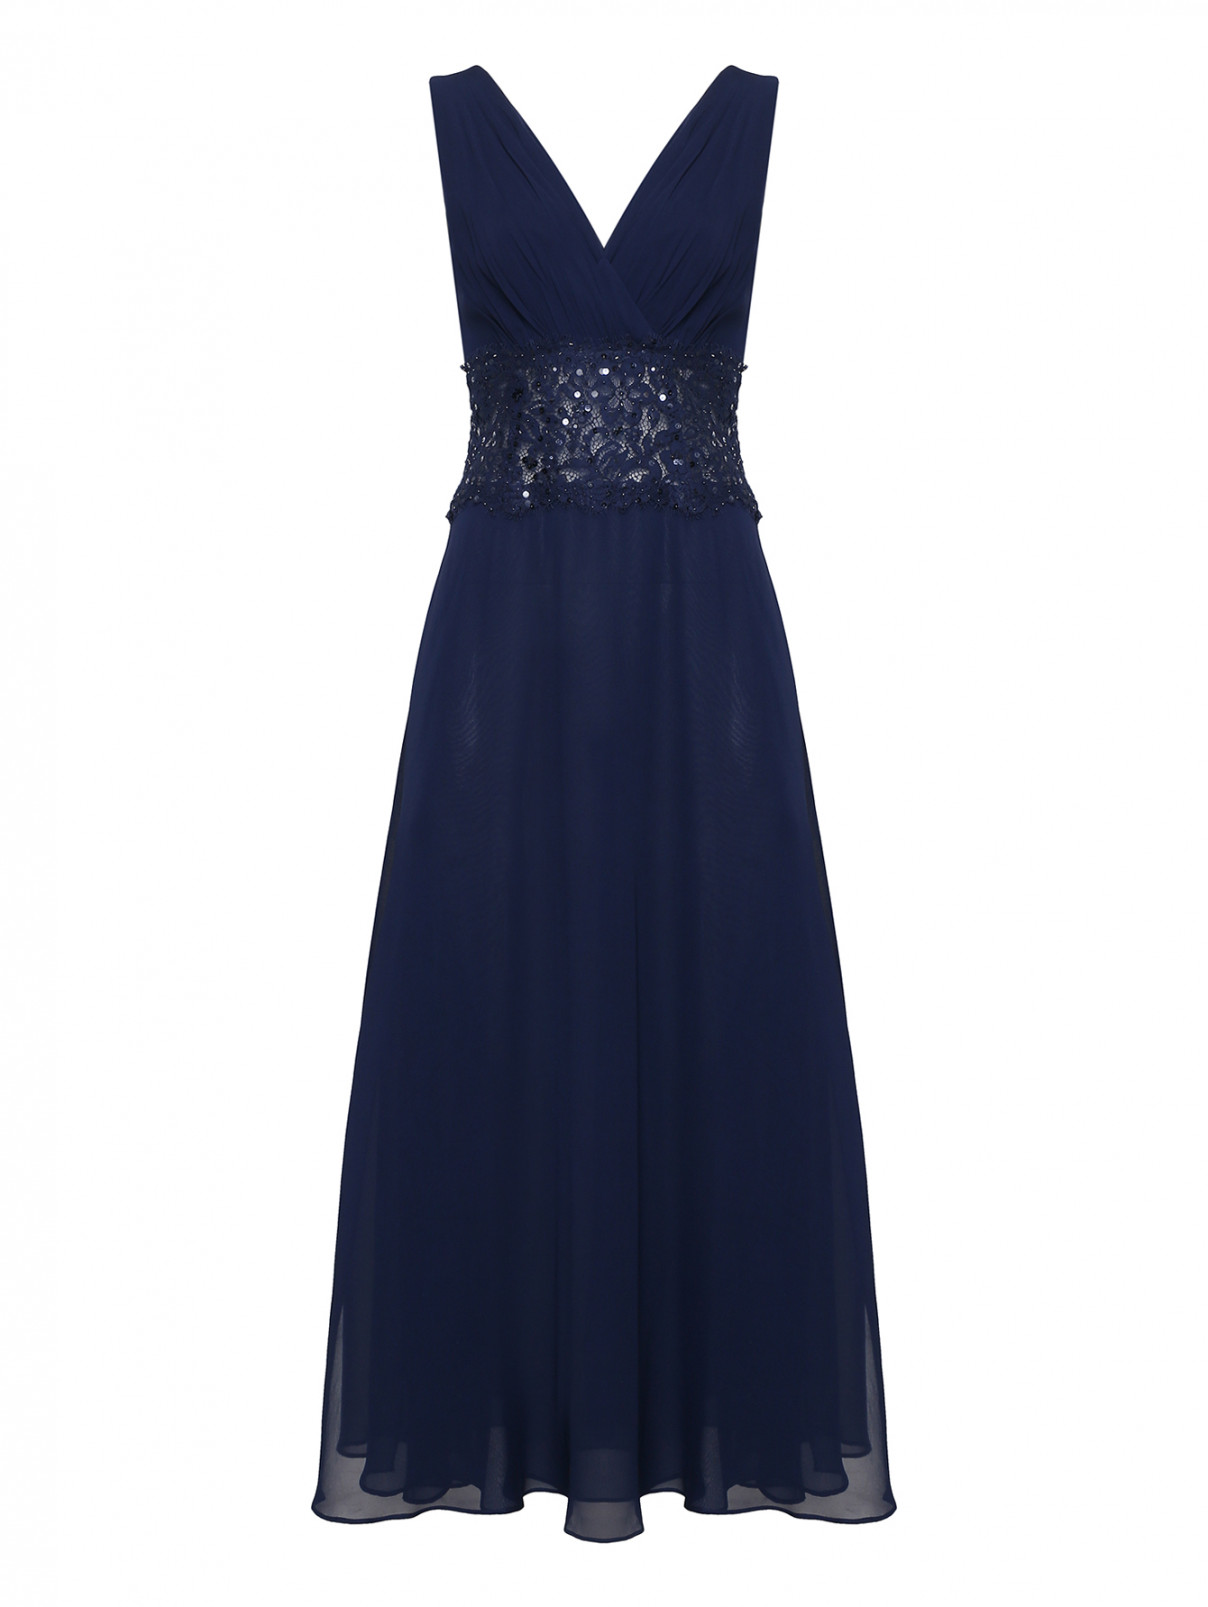 Вечернее платье из шелка и кружева Luisa Spagnoli  –  Общий вид  – Цвет:  Синий